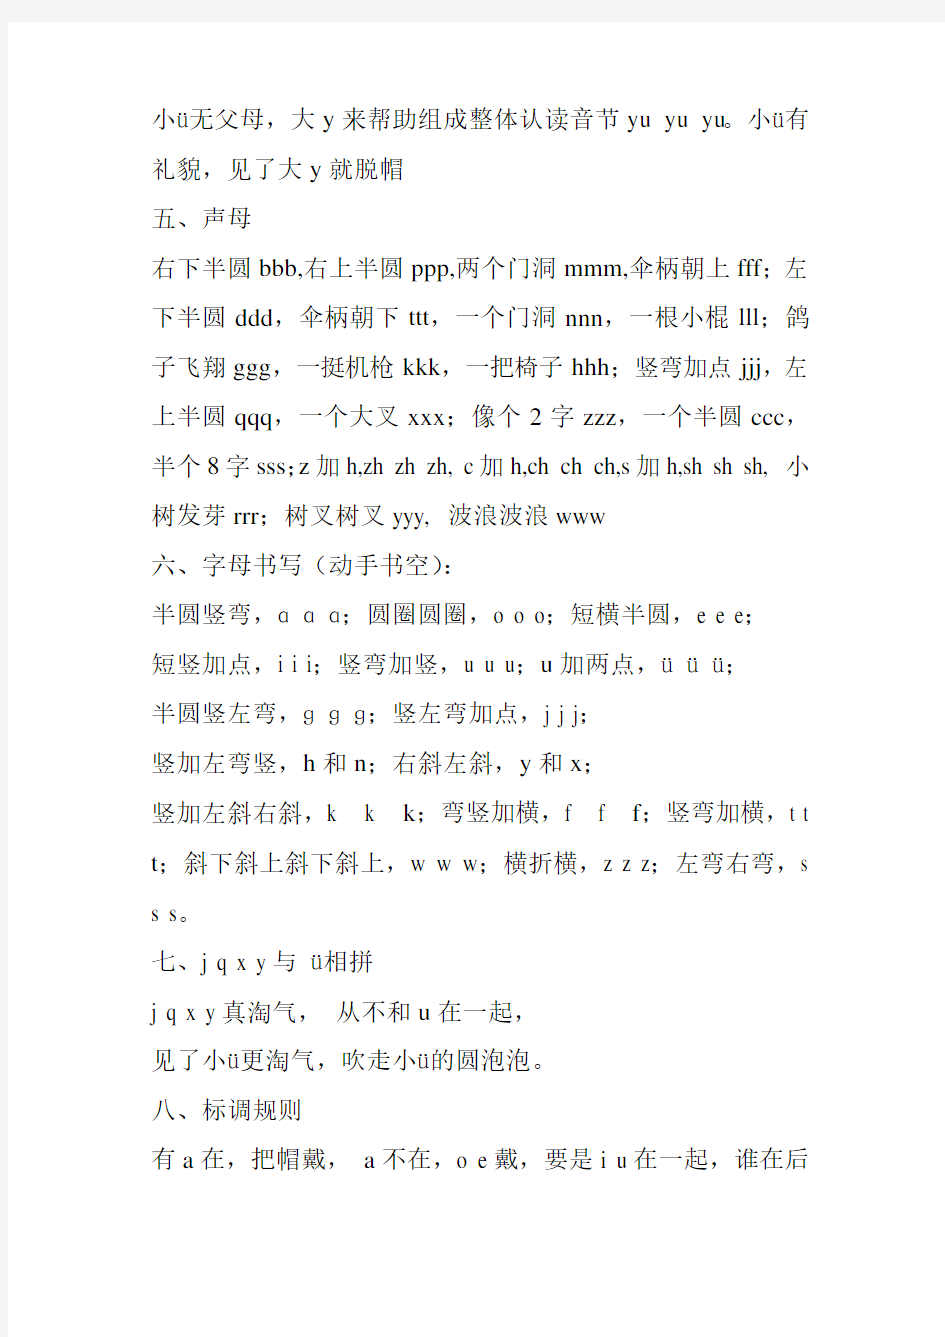 (完整版)小学一年级汉语拼音字母儿歌与口诀